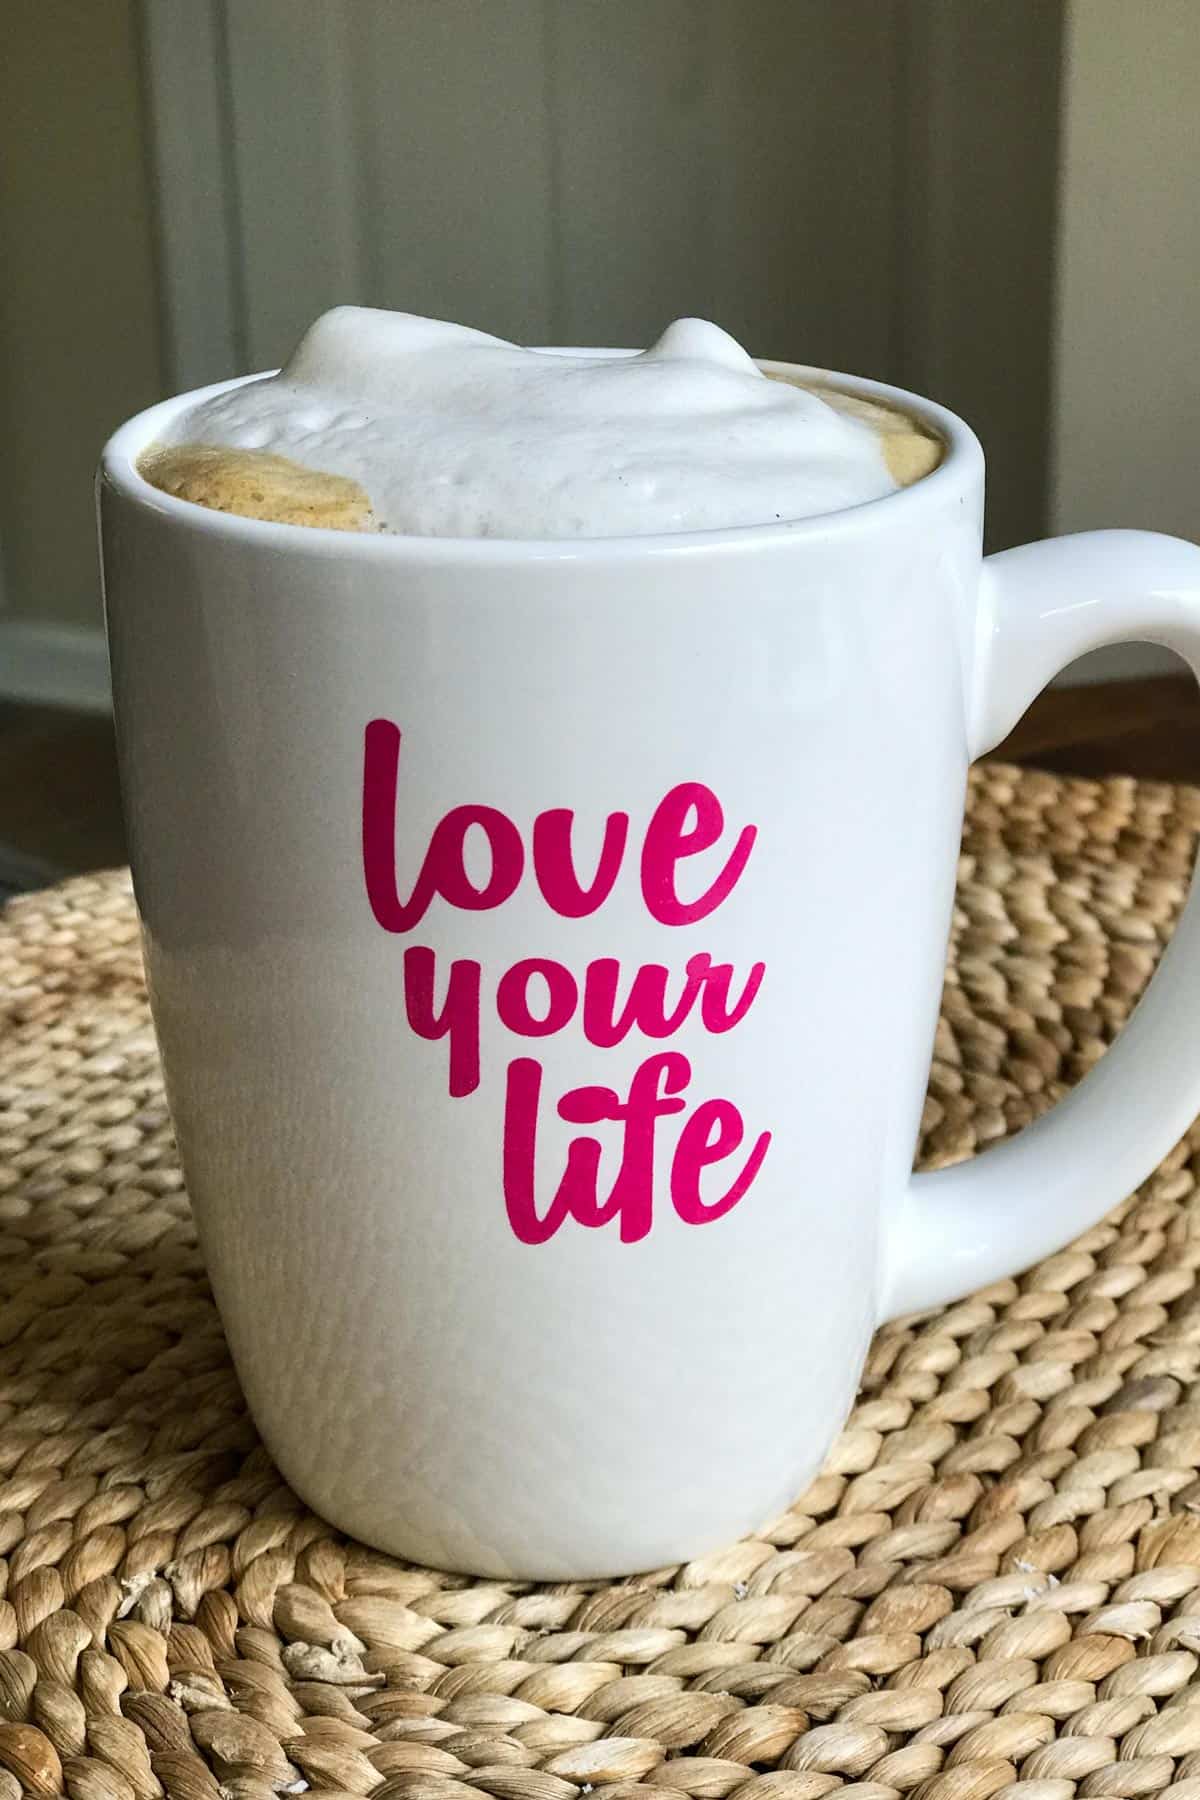 Cappuccino sense lactis a la tassa que diu "estima la teva vida"